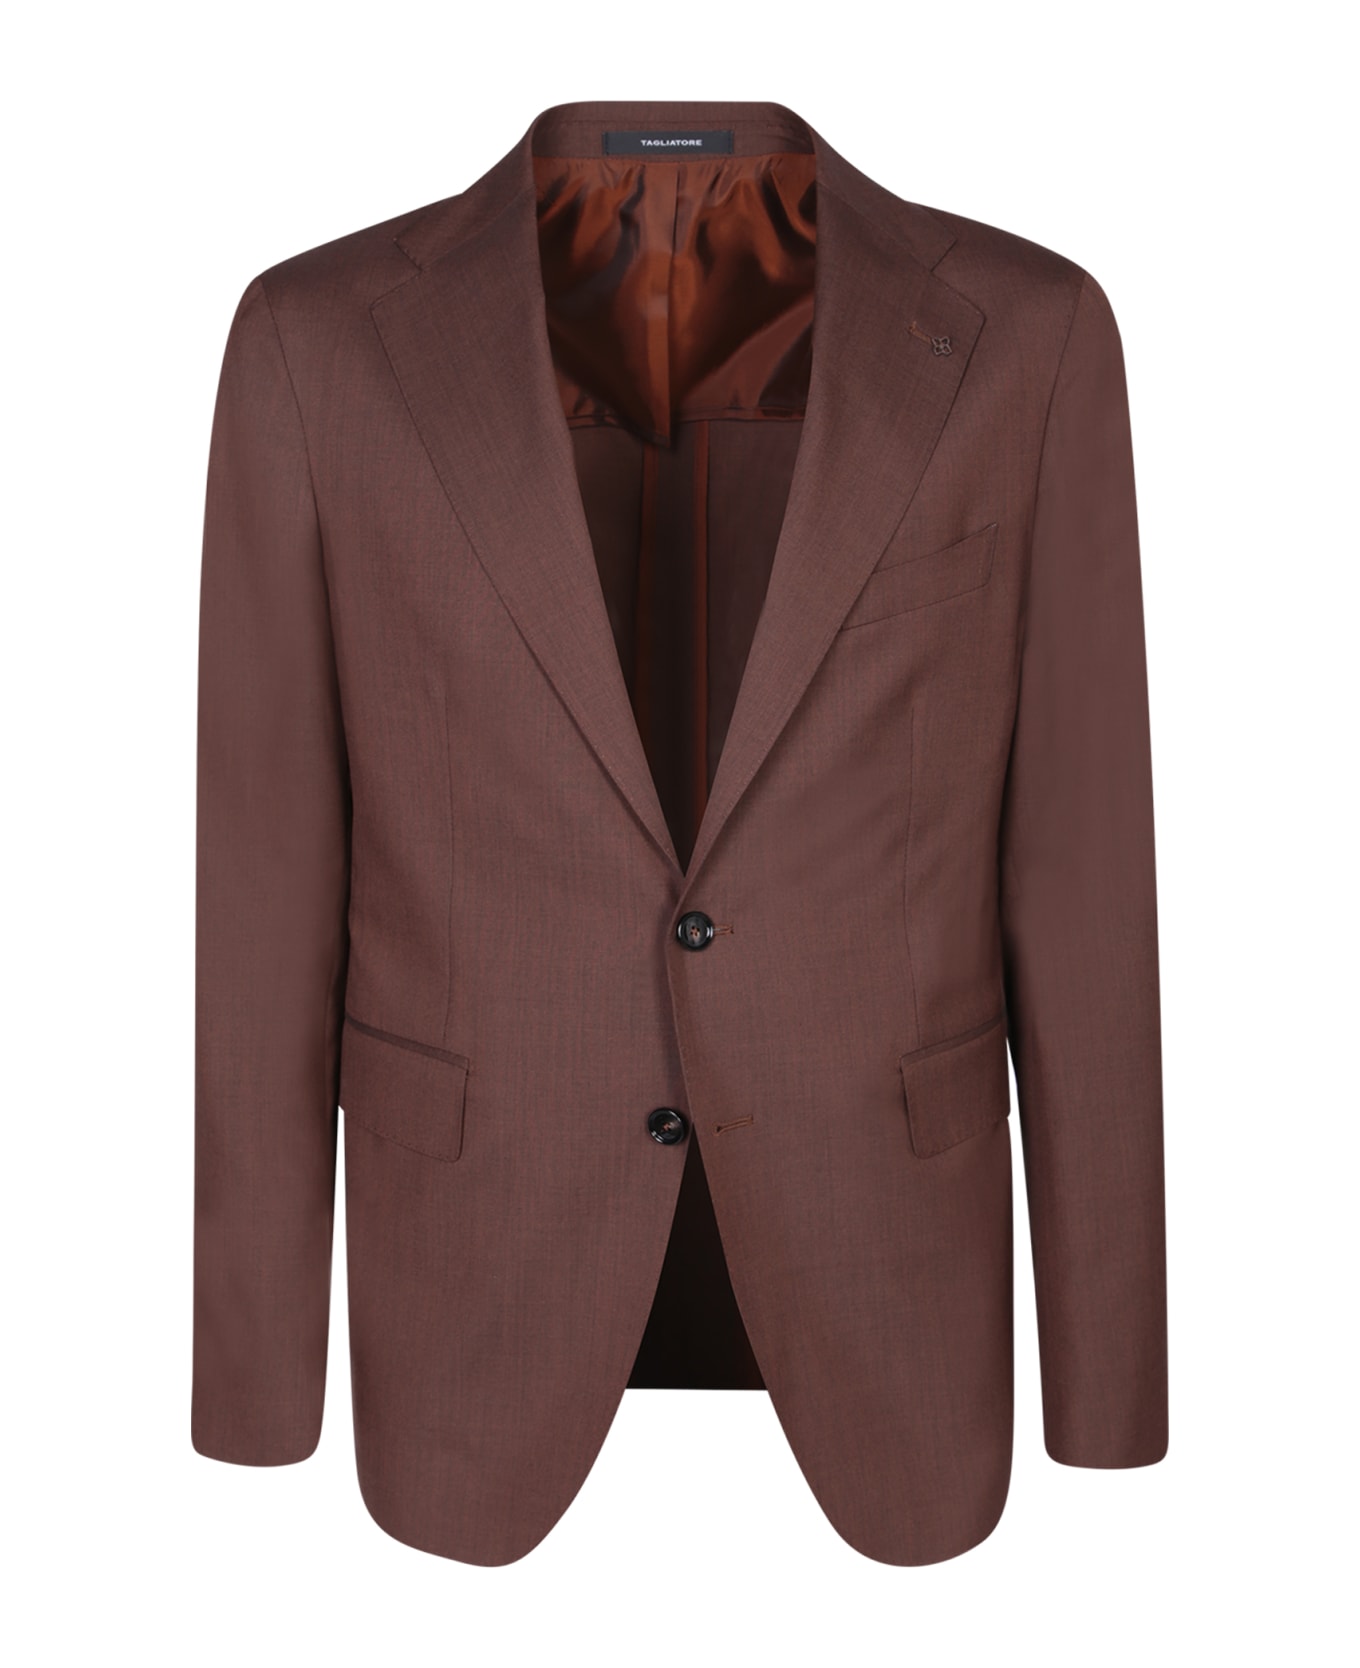 Tagliatore Vesuvio Brown Suit - Brown スーツ